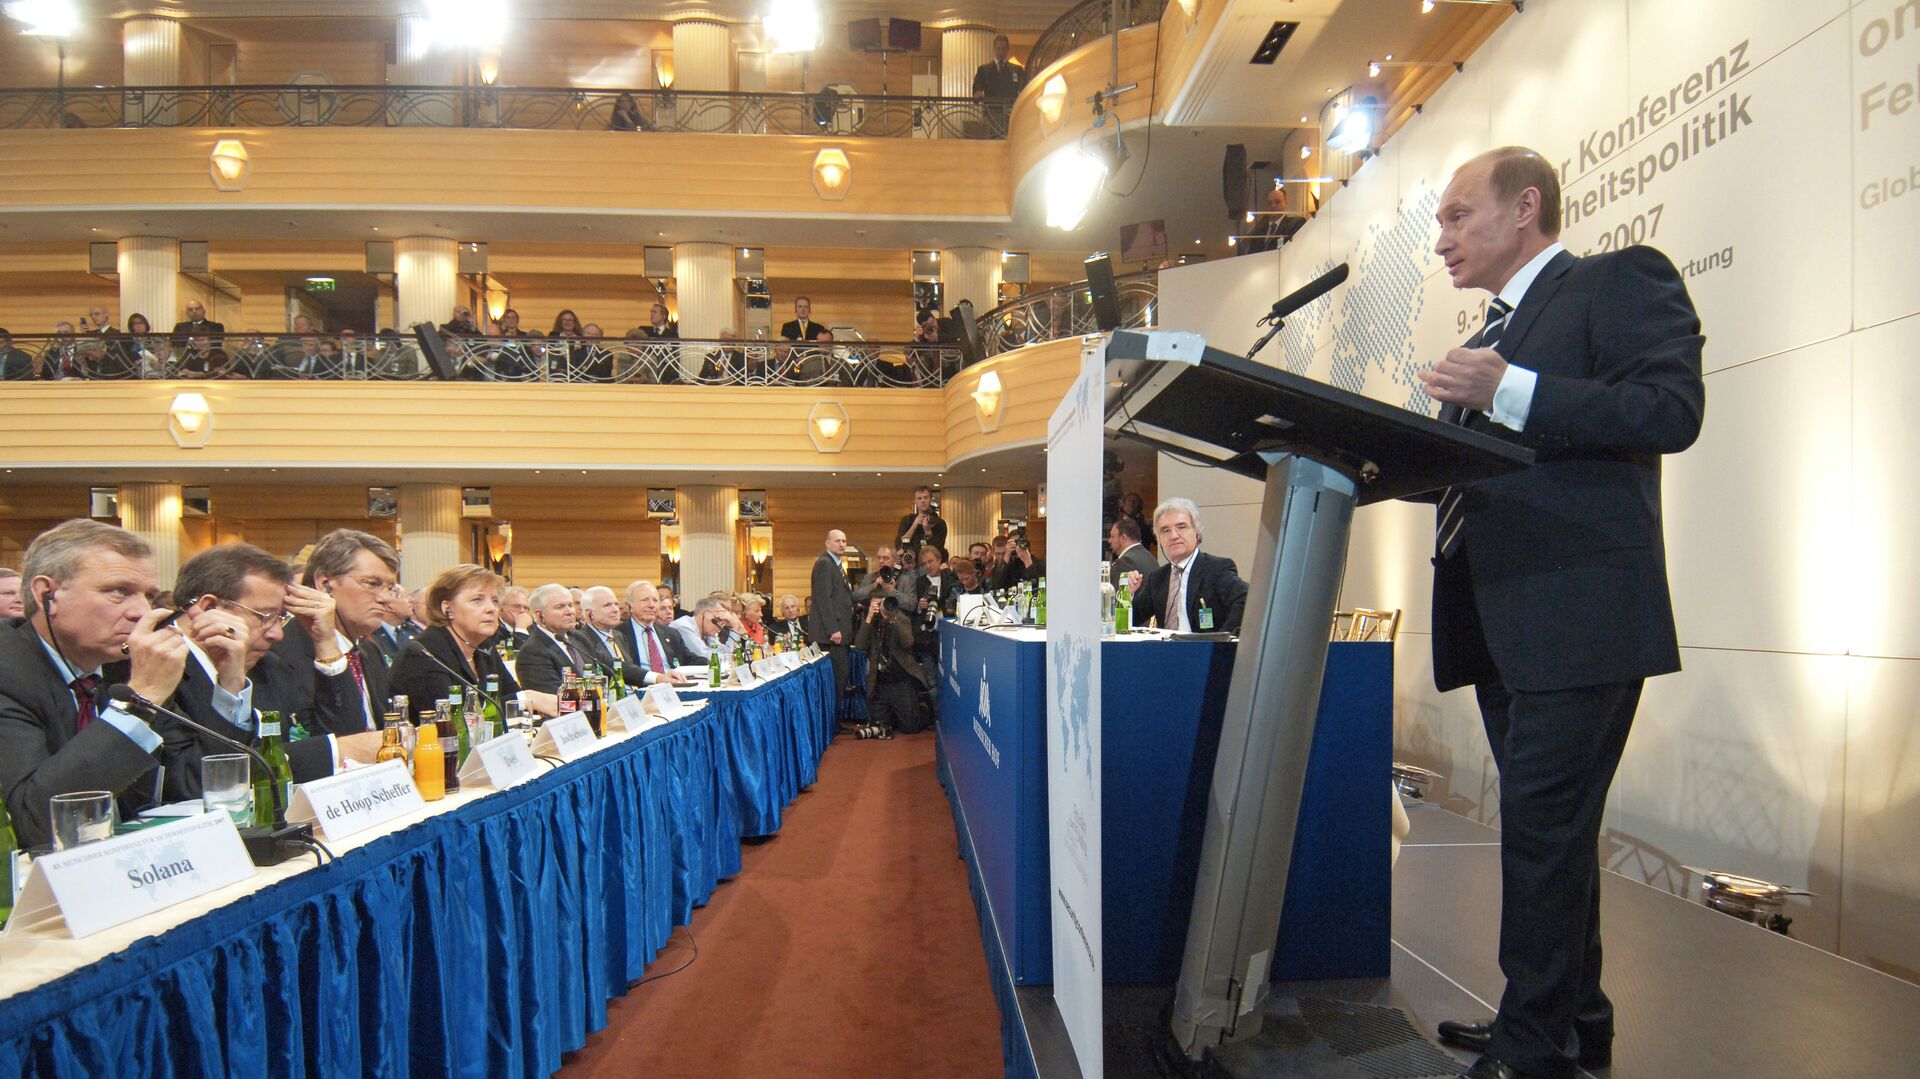 Президент России Владимир Путин во время выступления в Мюнхене. 11 февраля 2007 - ИноСМИ, 1920, 26.01.2022